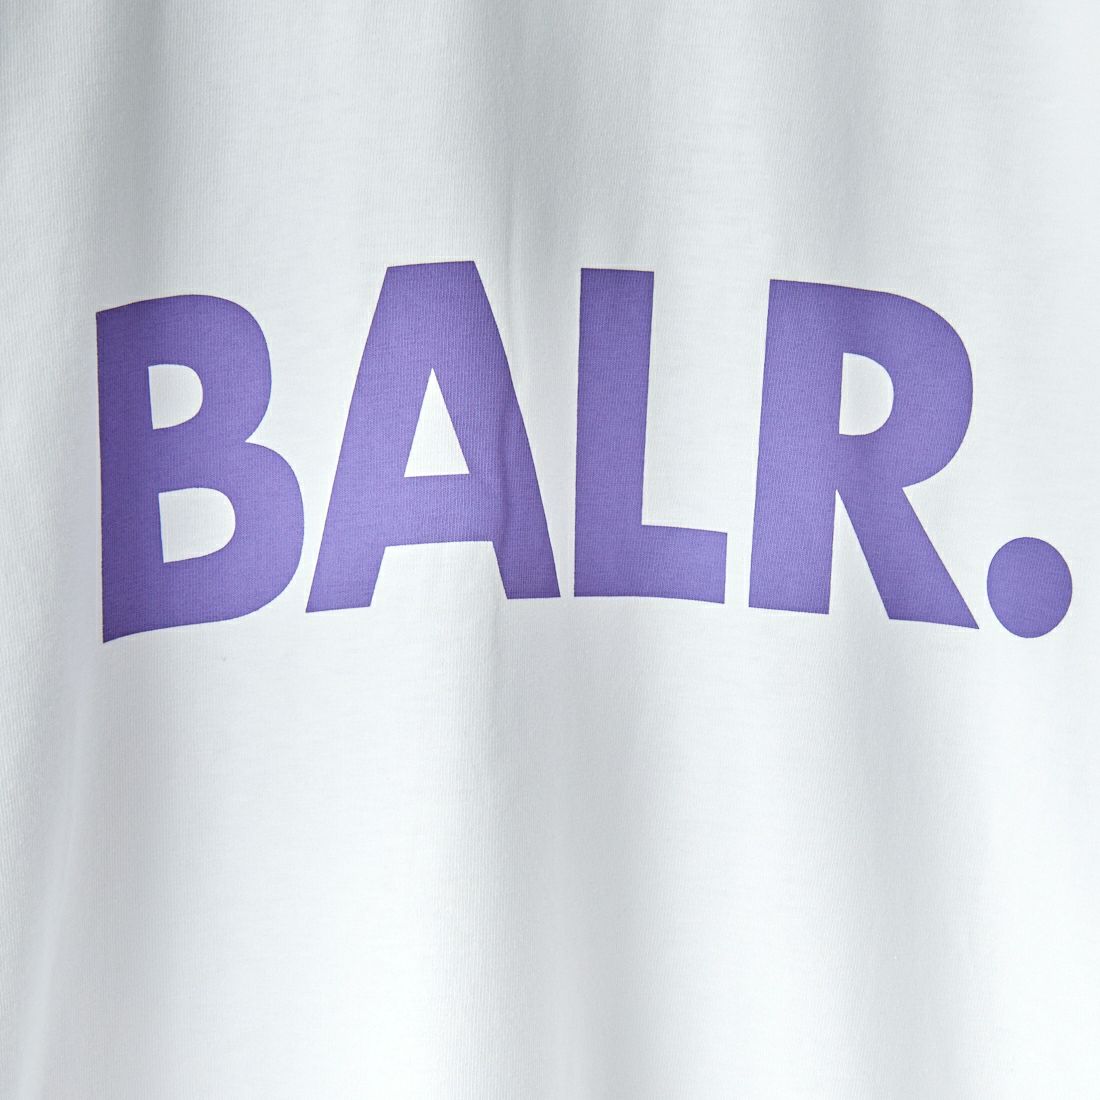 BALR. [ボーラー] OLAF STRAIGHT ブランドロゴTシャツ [B11111042]